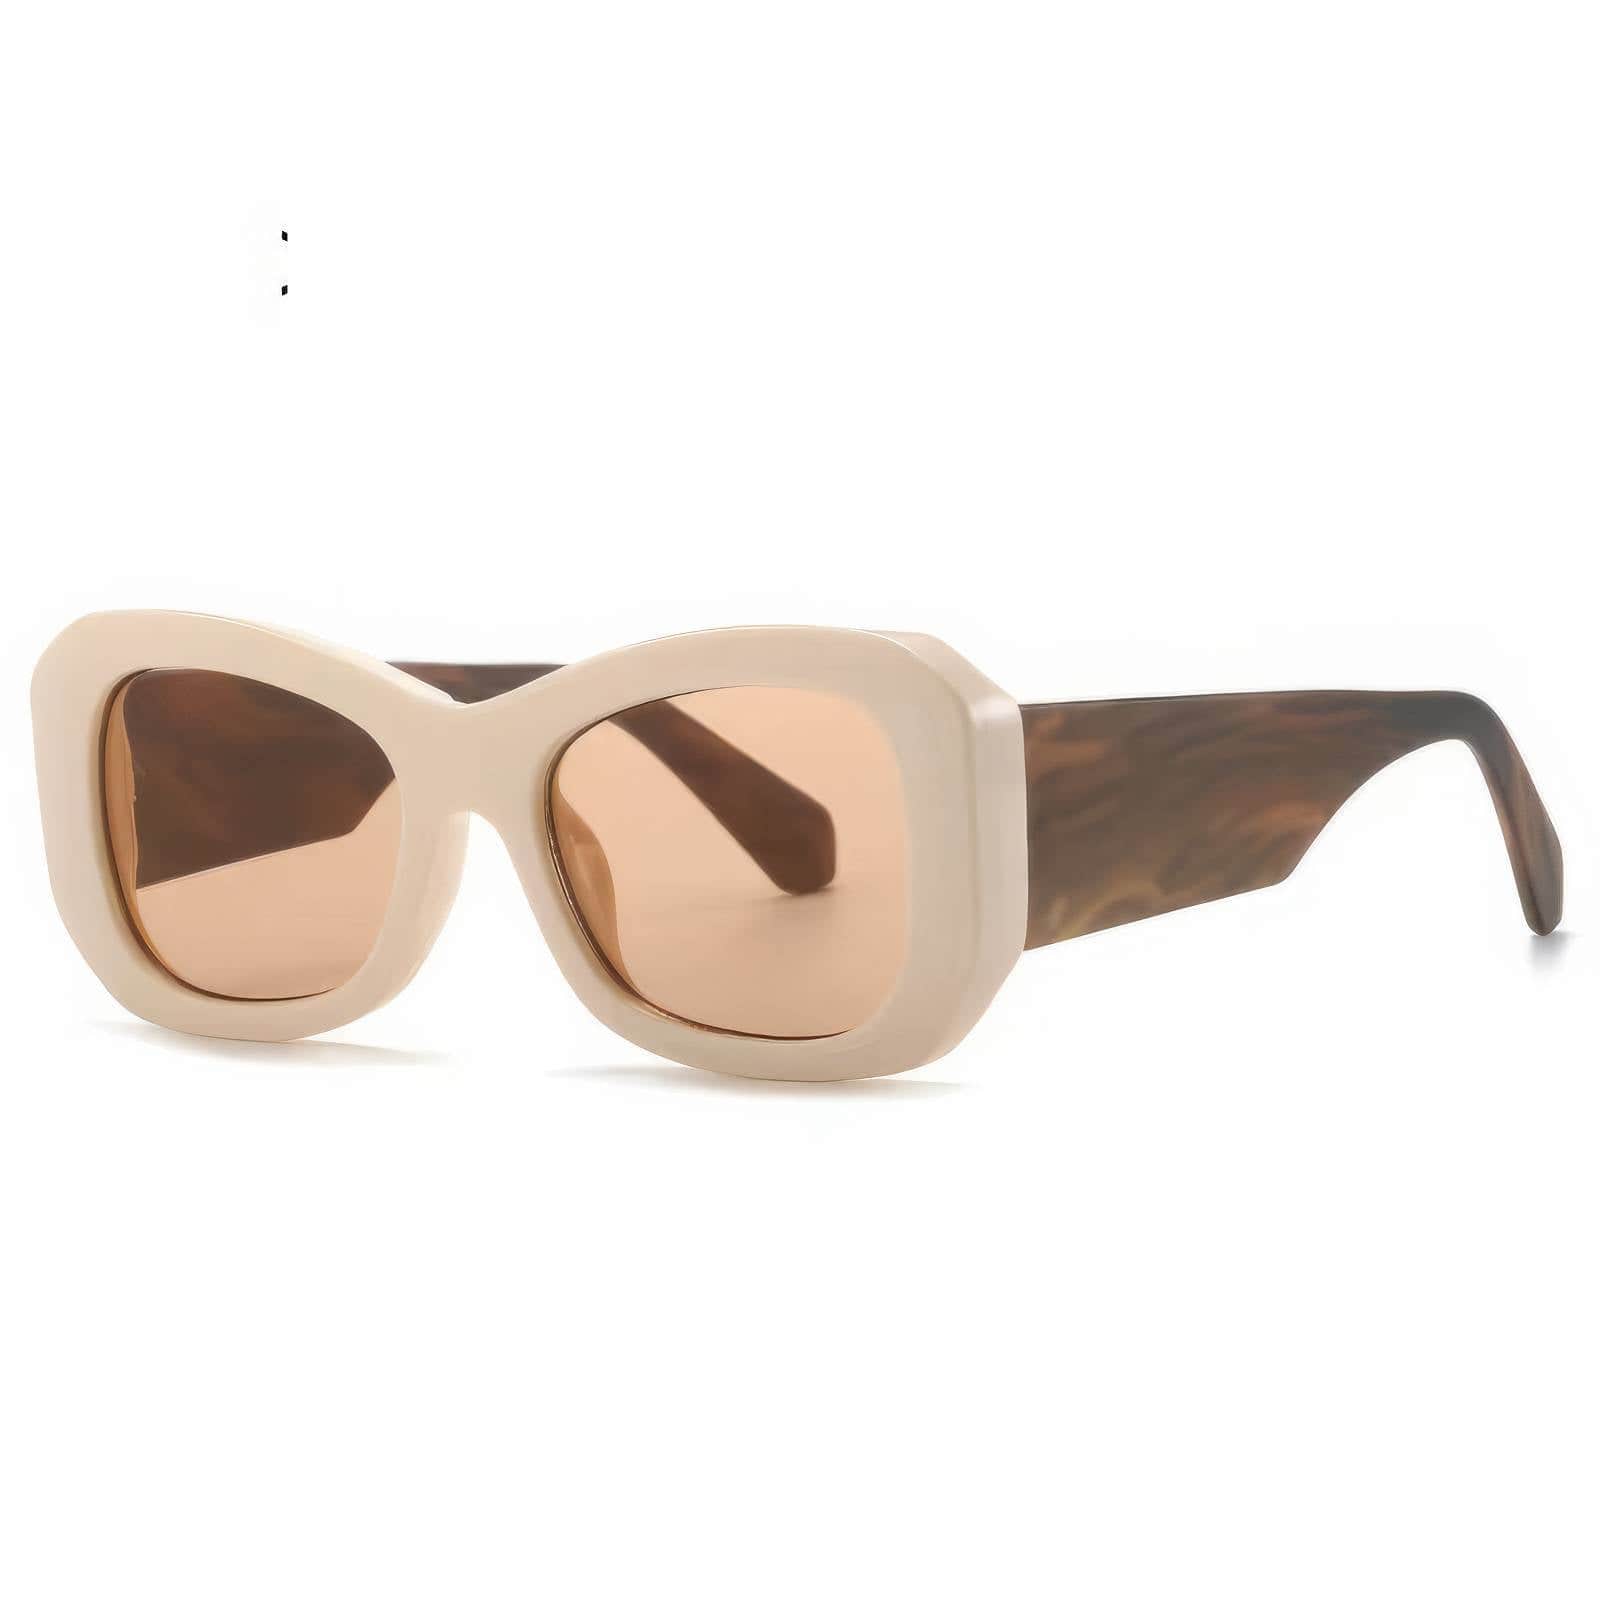 Funky Trending Square Sunglasses Ivory / Resin